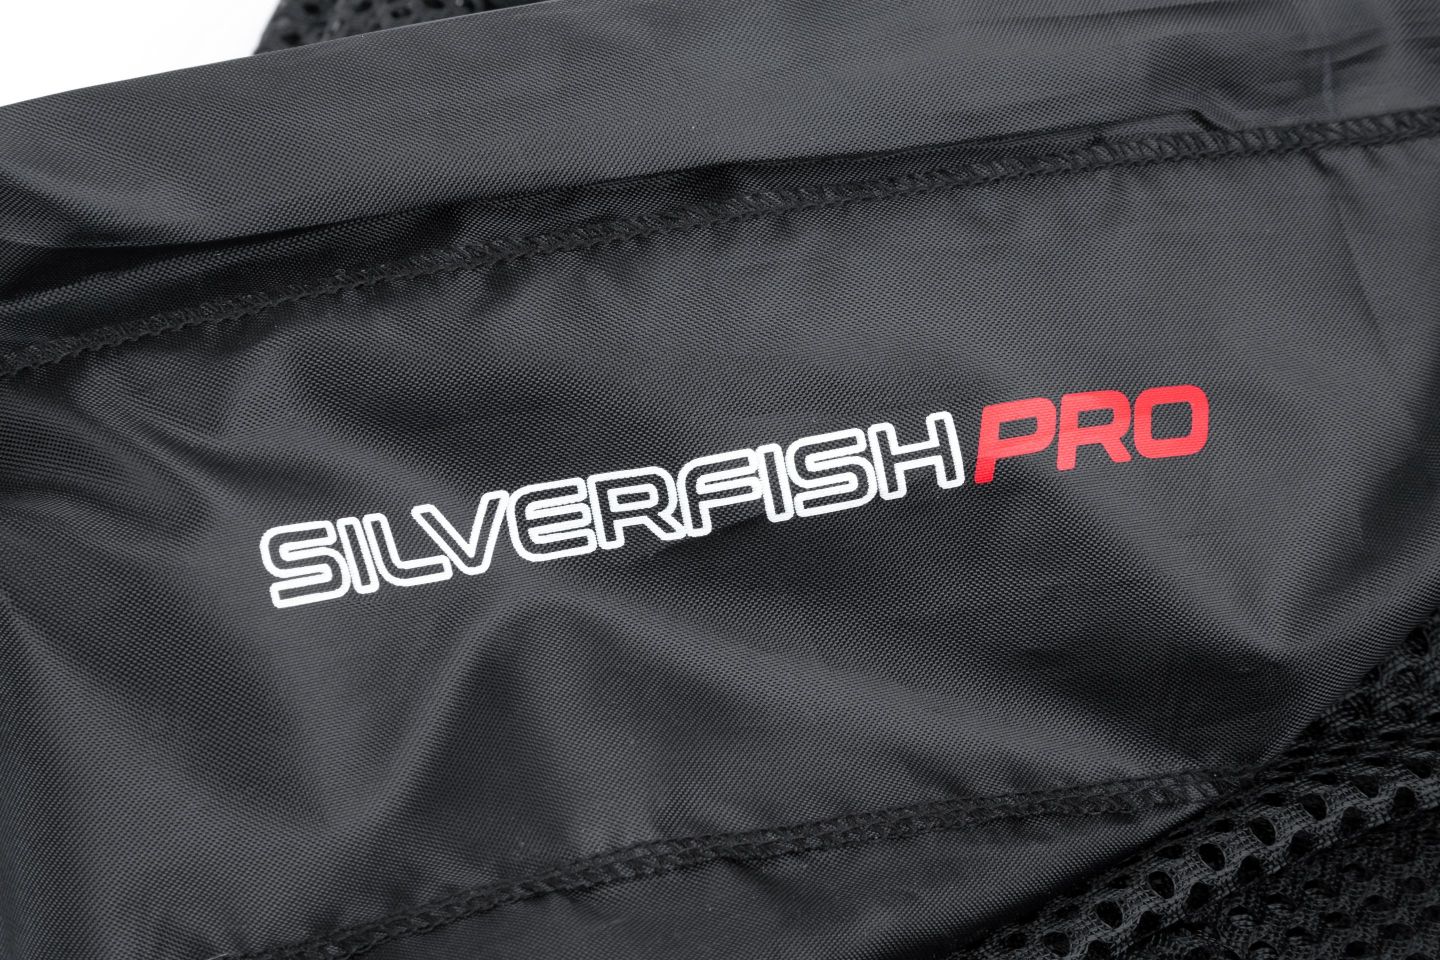 Nytro Silverfish Pro Beschwerter Setzkescher